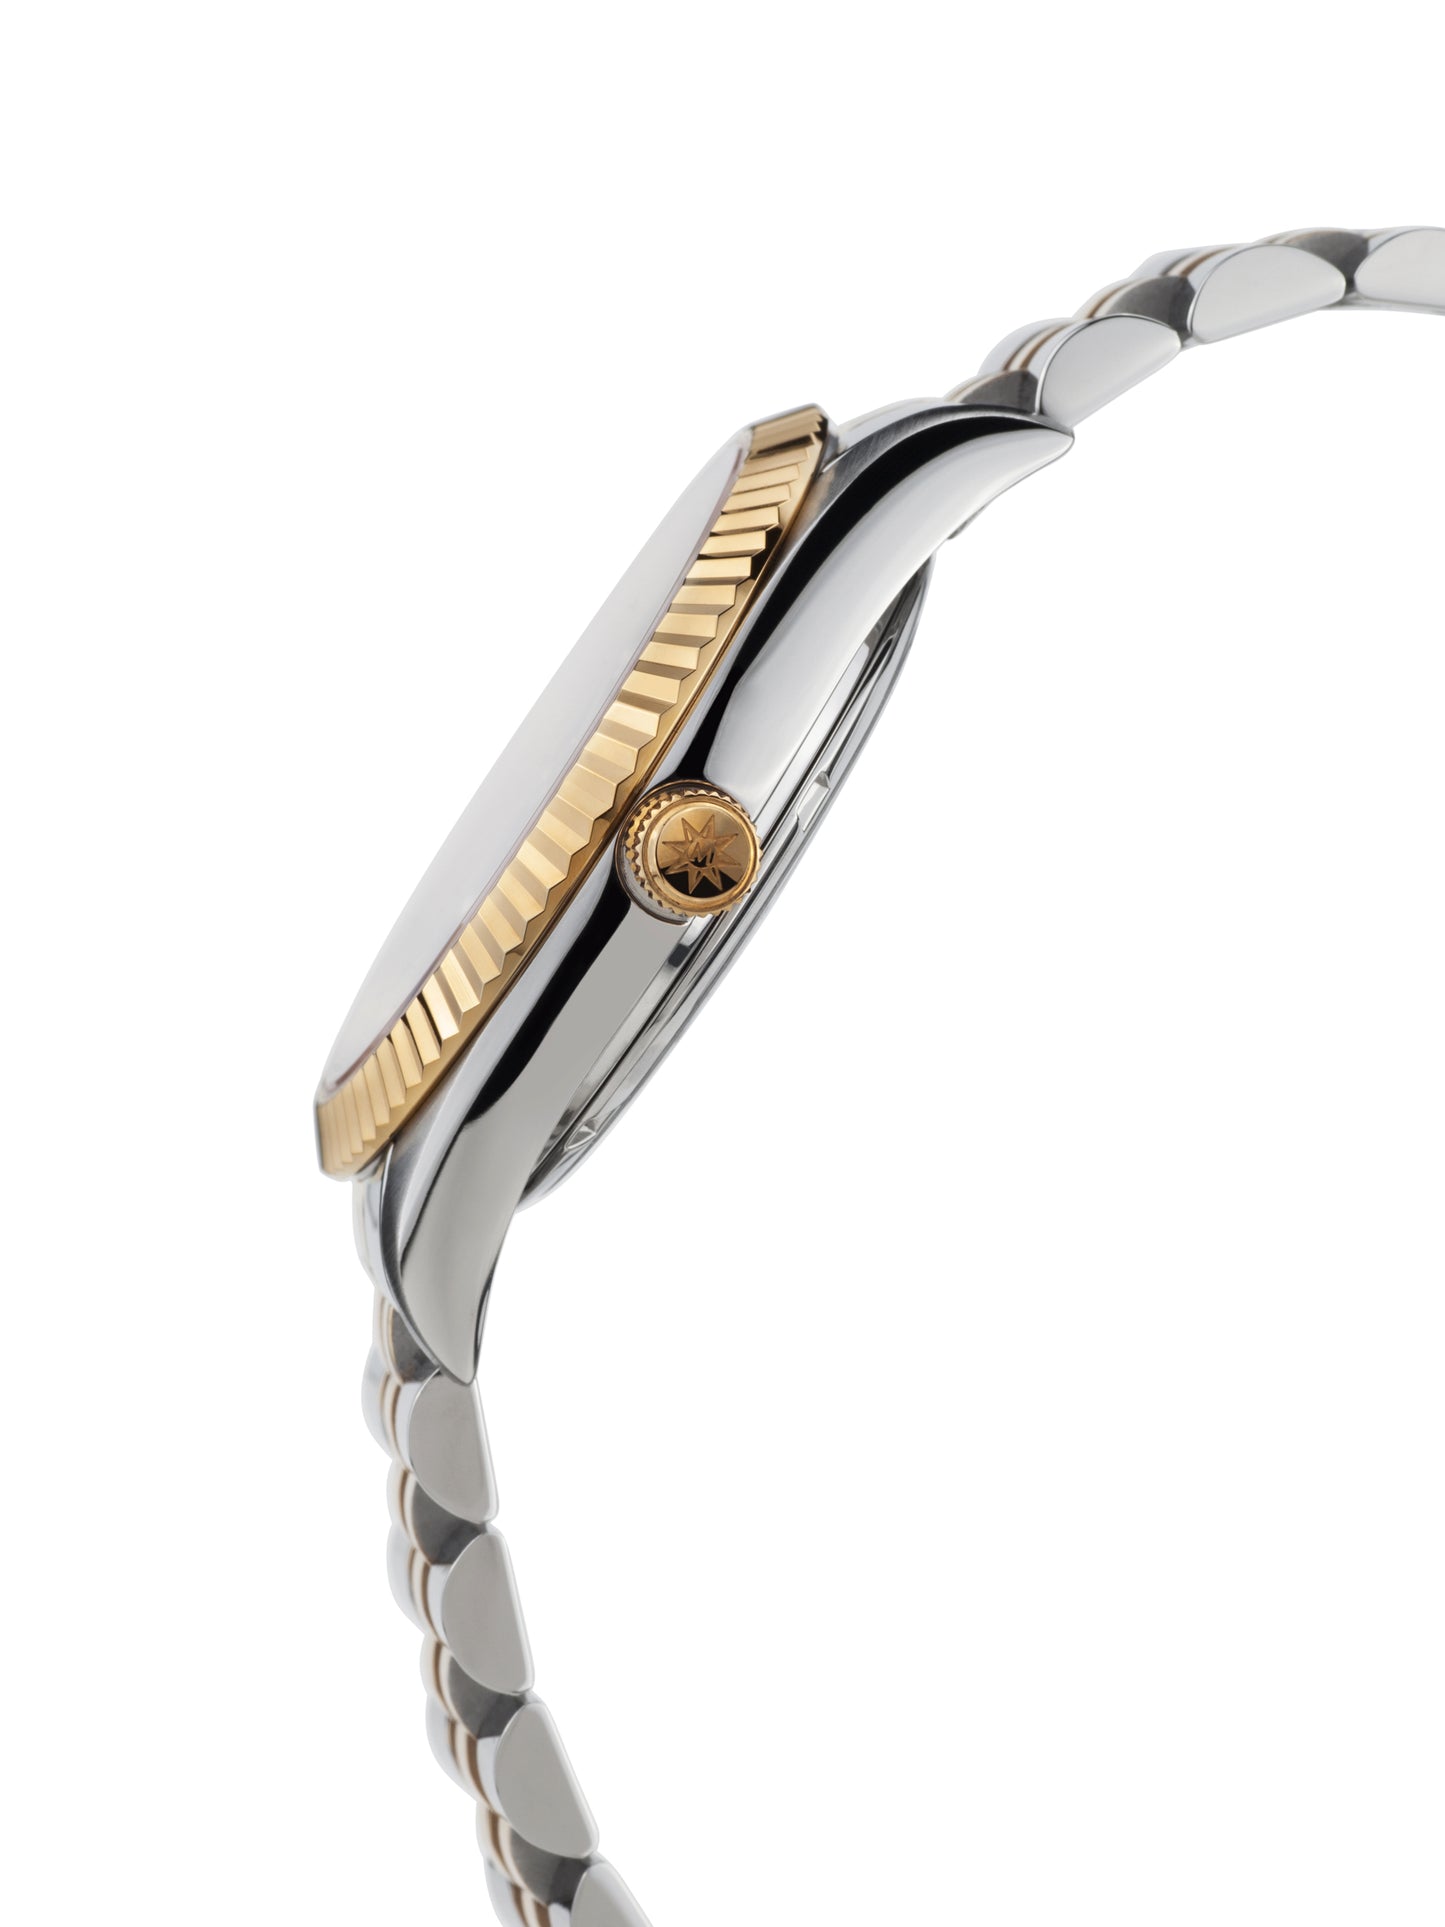 Automatic watches — Beauté de Suisse — Mathis Montabon — Gold IP Schwarz Two Tone